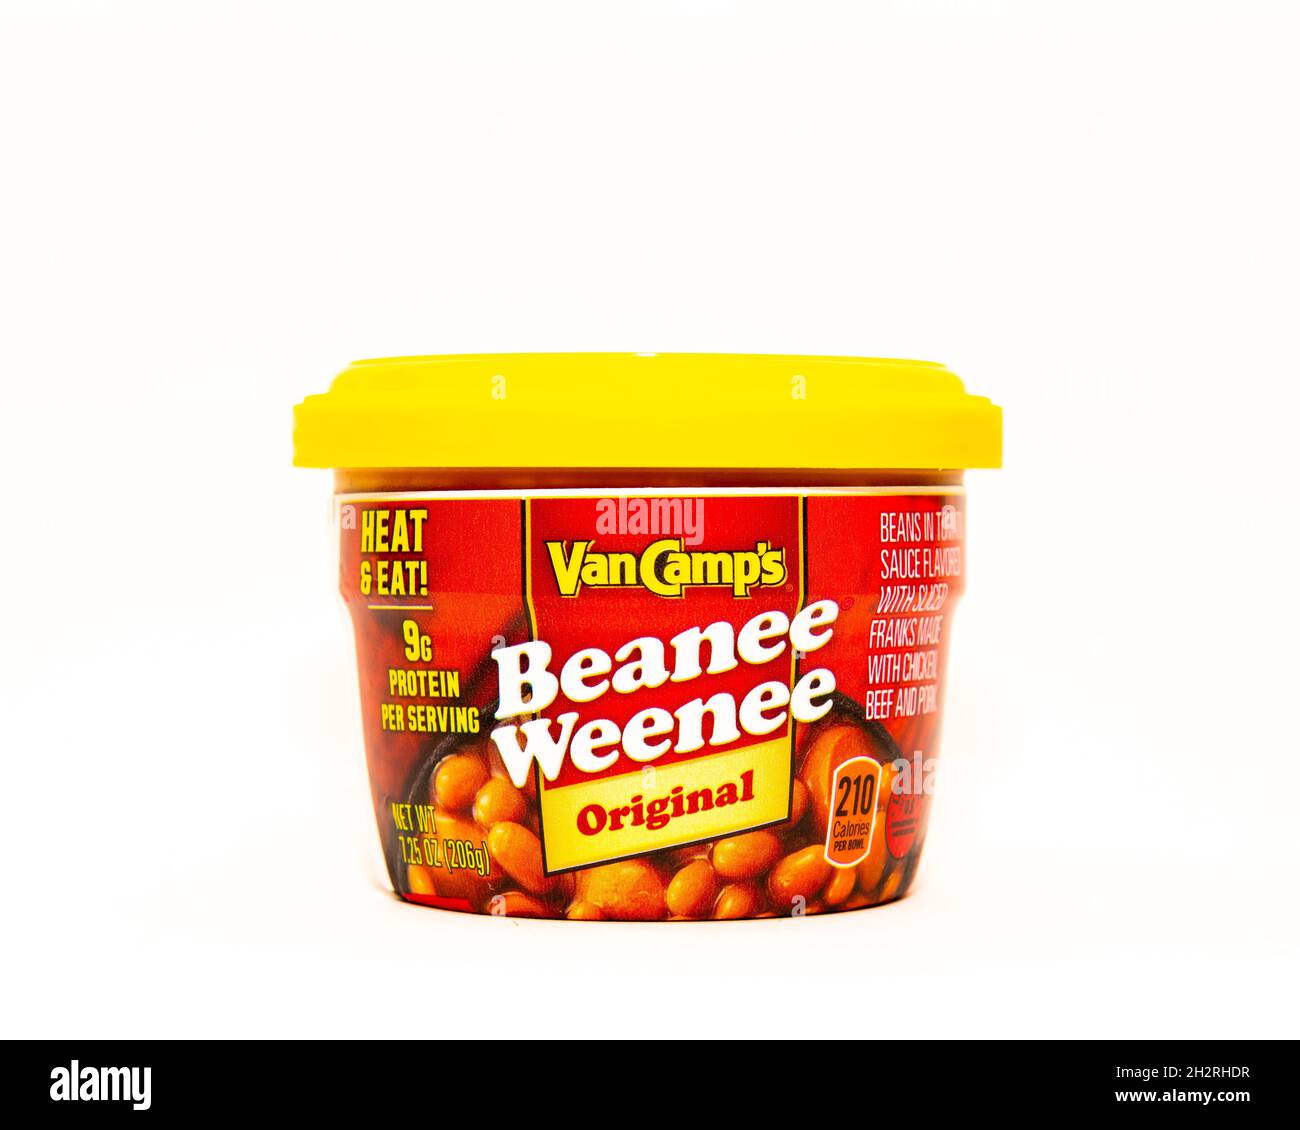 Un contenant en plastique de haricots Van Camp's Beanee Weenee Original Heat & Eat dans une sauce tomate aromatisée avec des tranches de franks Banque D'Images